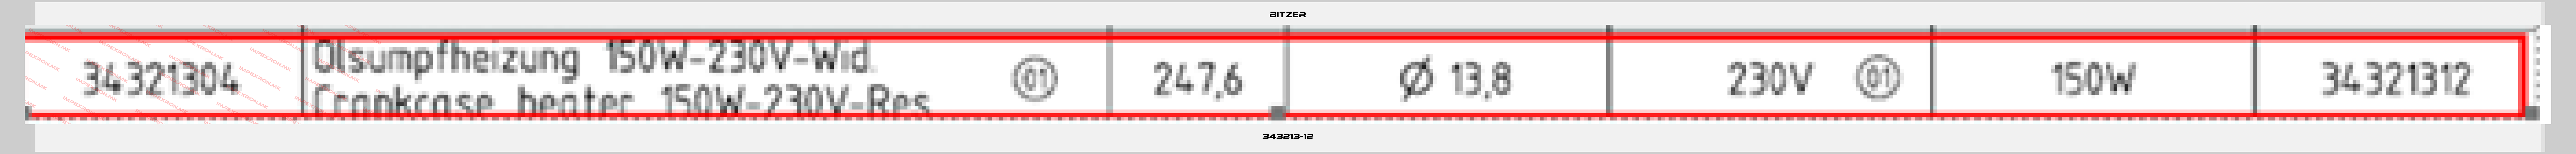 Bitzer-343213-12price